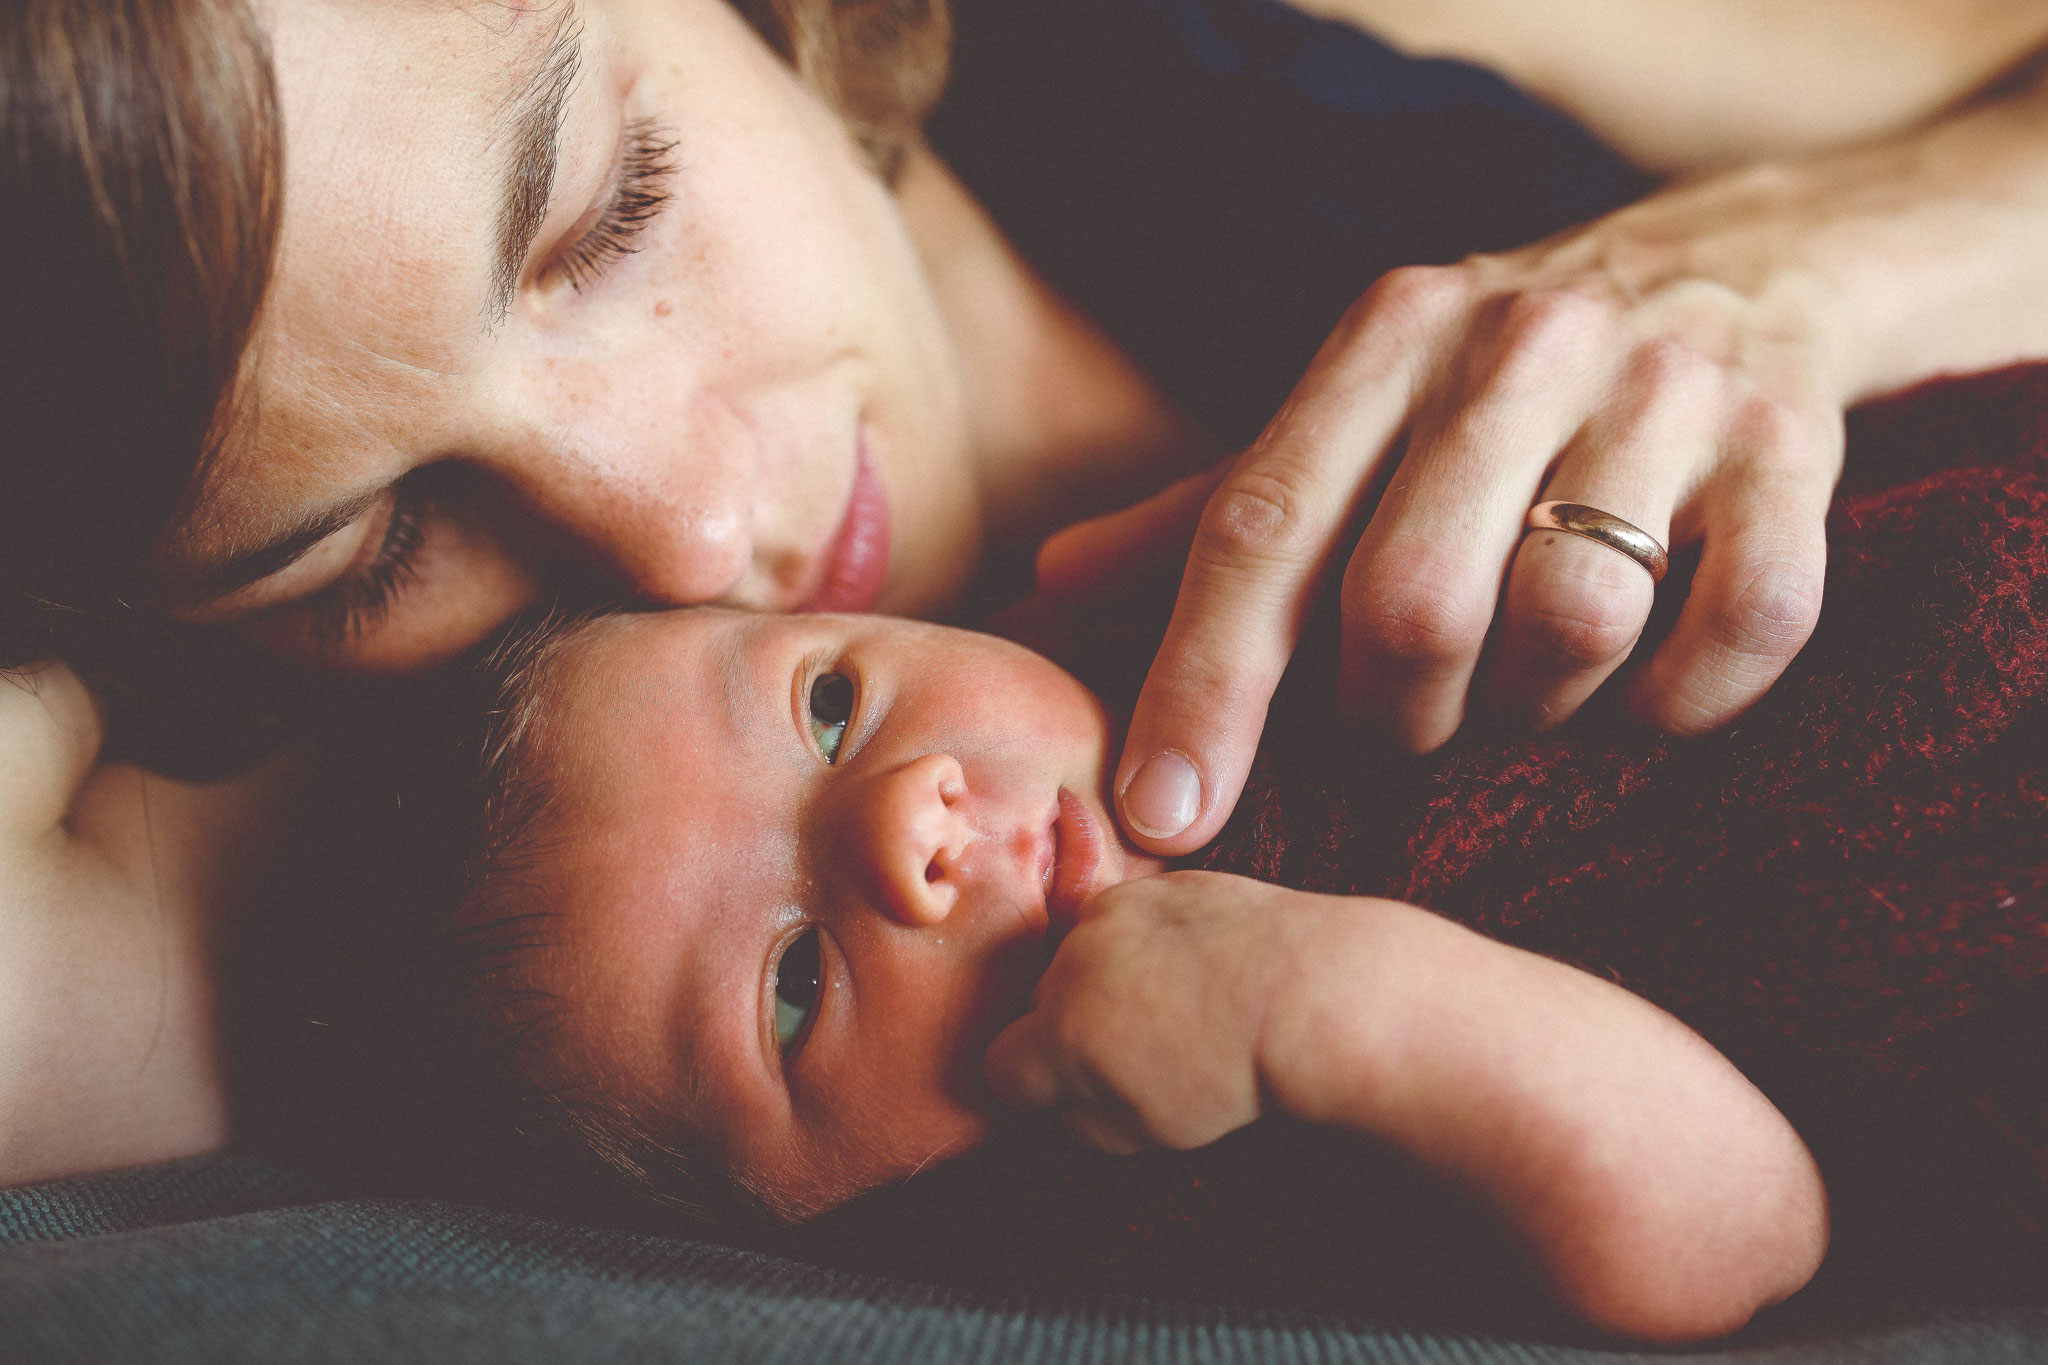 Newbornfotografie | Newbornshooting | Babyfotos | Homestory | Babyshooting | Portraitfotografin Rebecca Adloff | Familienfotos |Ruhrgebiet, Essen, Bochum, Düsseldorf, Köln, NRW, Deutschland, Simmern